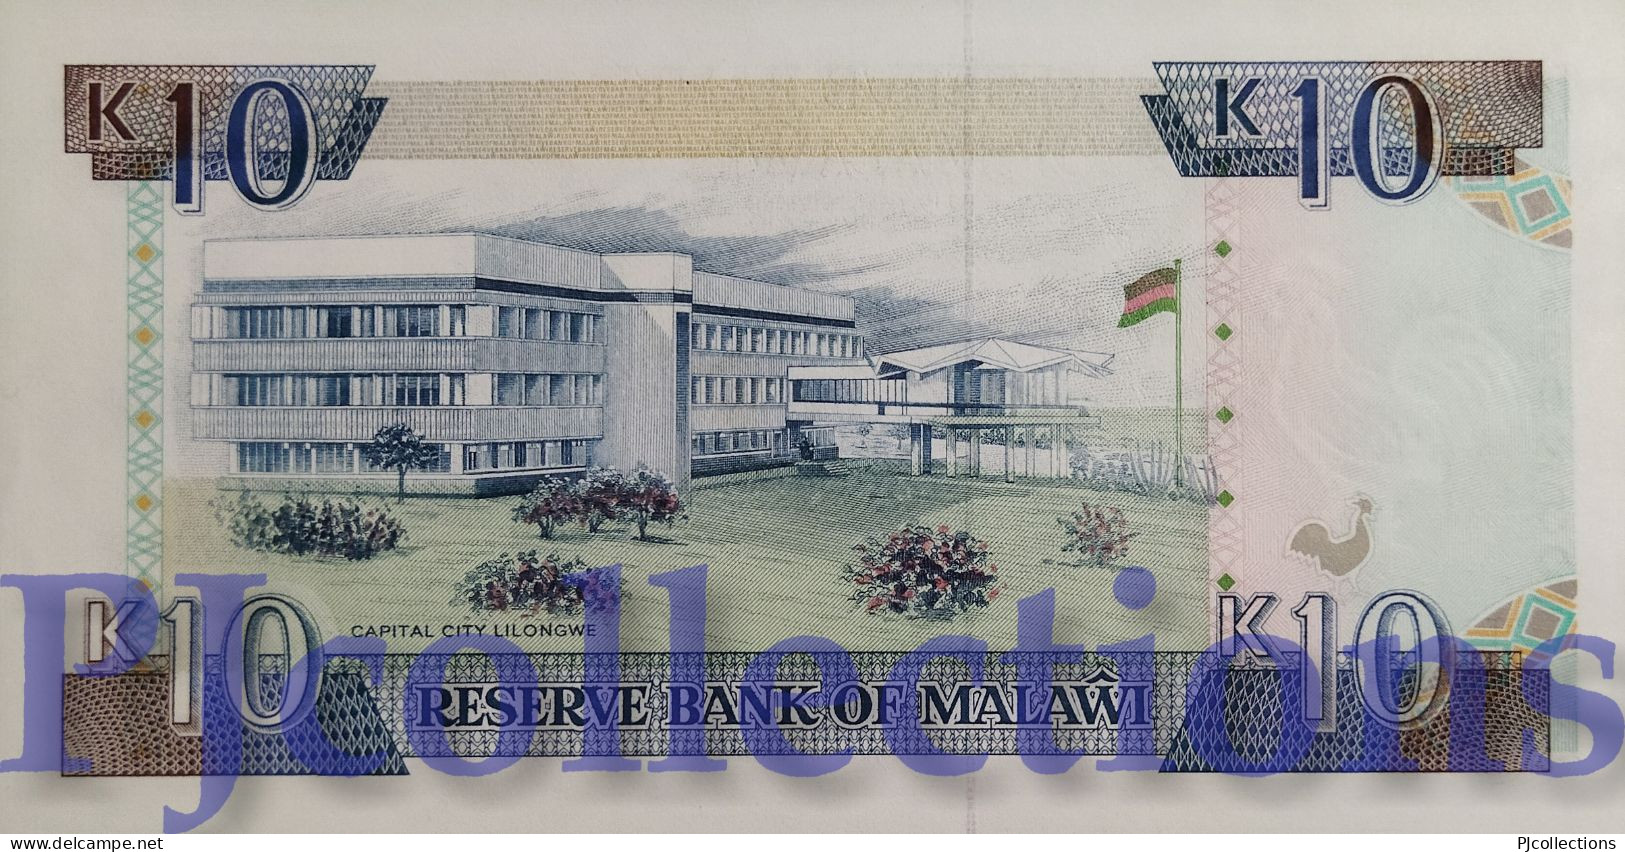 MALAWI 10 KWACHA 1994 PICK 25c UNC - Malawi